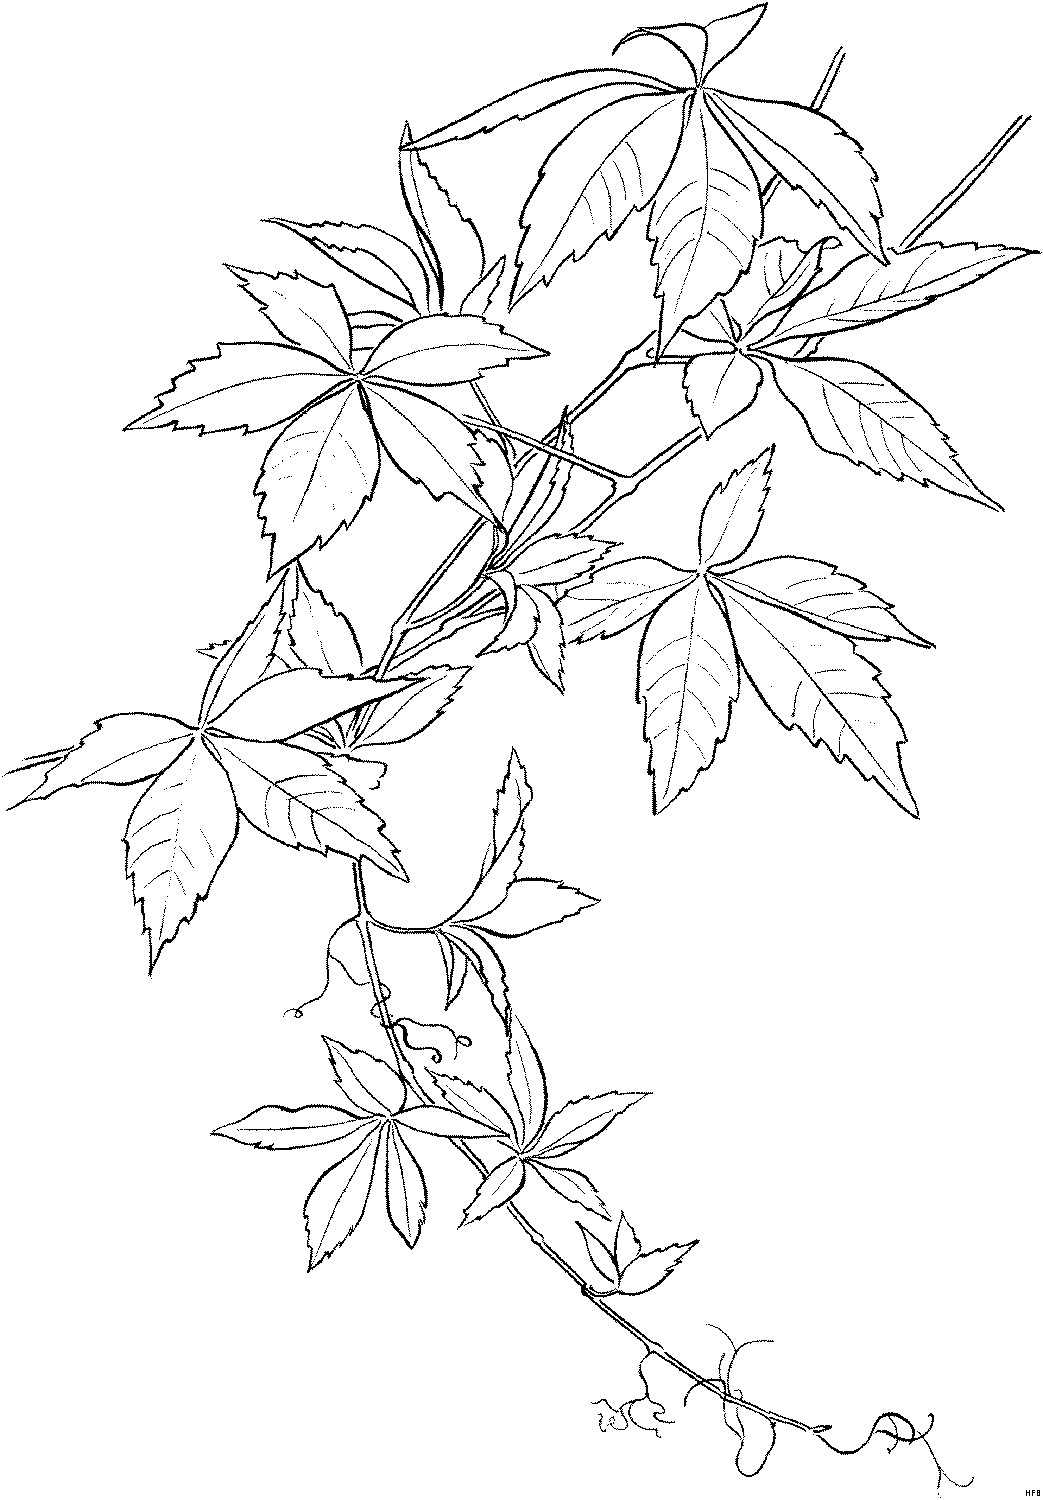 Malvorlagen Blätter
 Blaetter Mit Wurzel Ausmalbild & Malvorlage Blumen